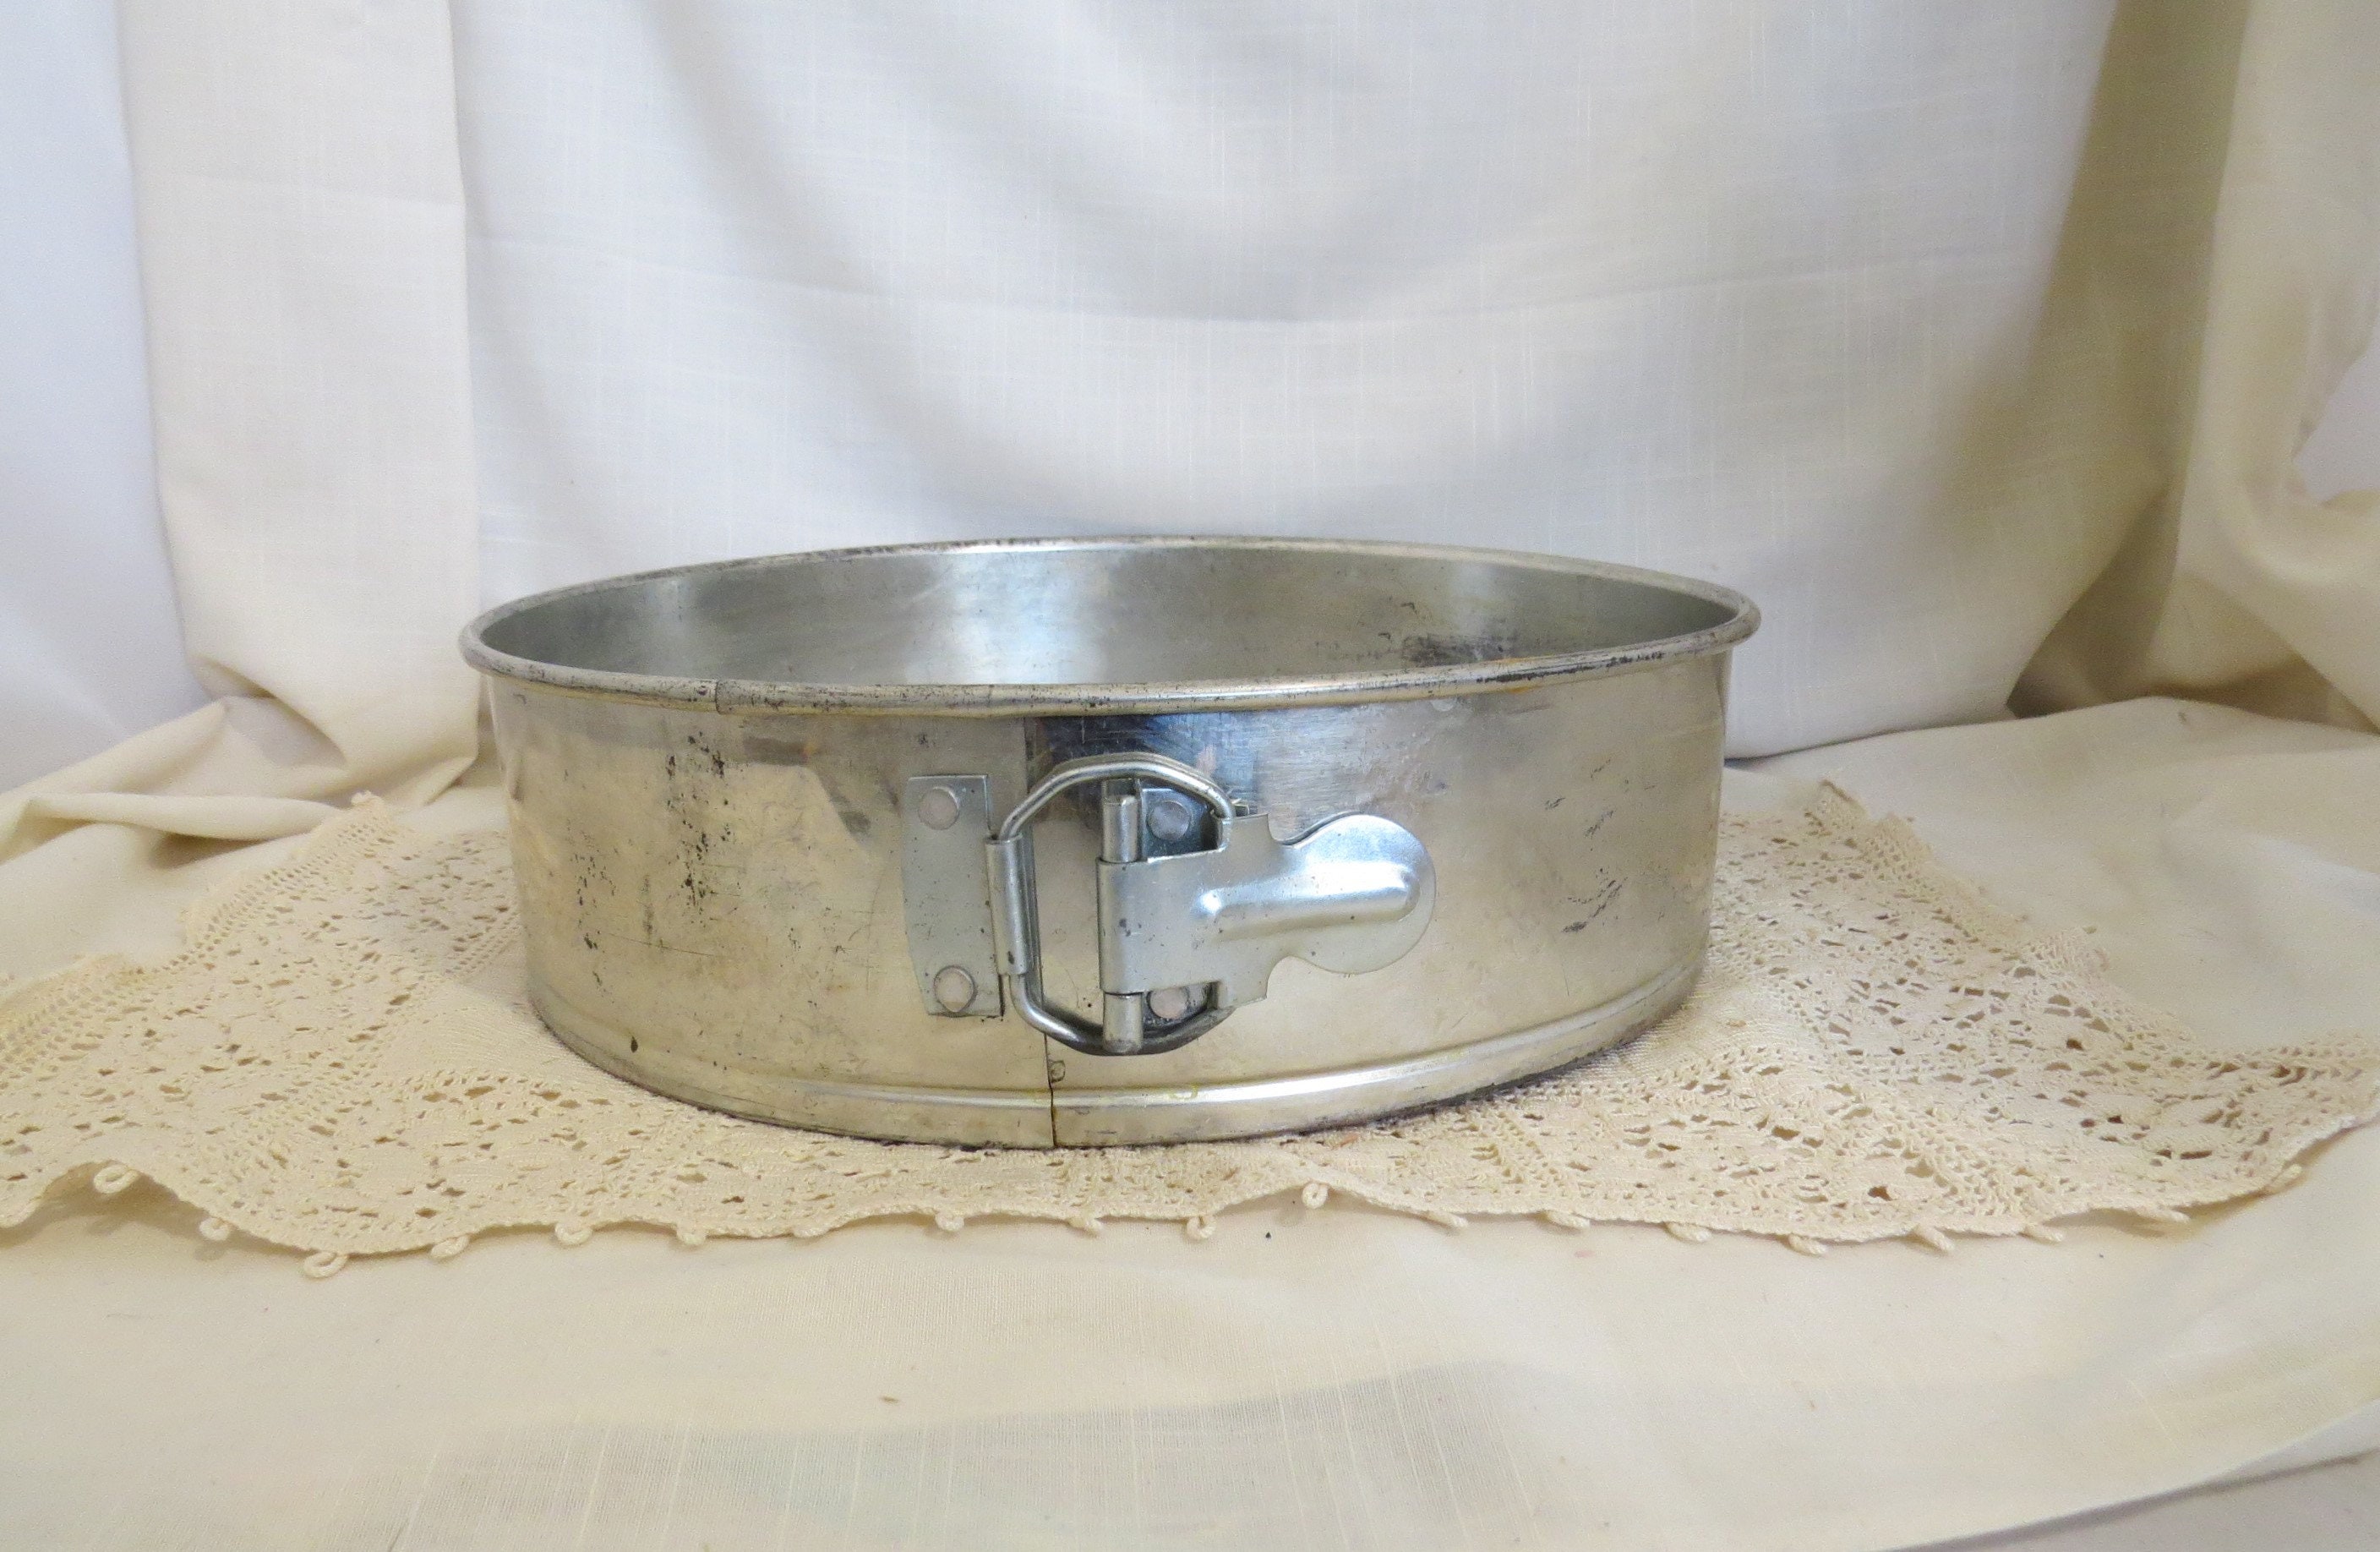  Zenker Tin Plated Springform Pan, 10-Inch Diameter